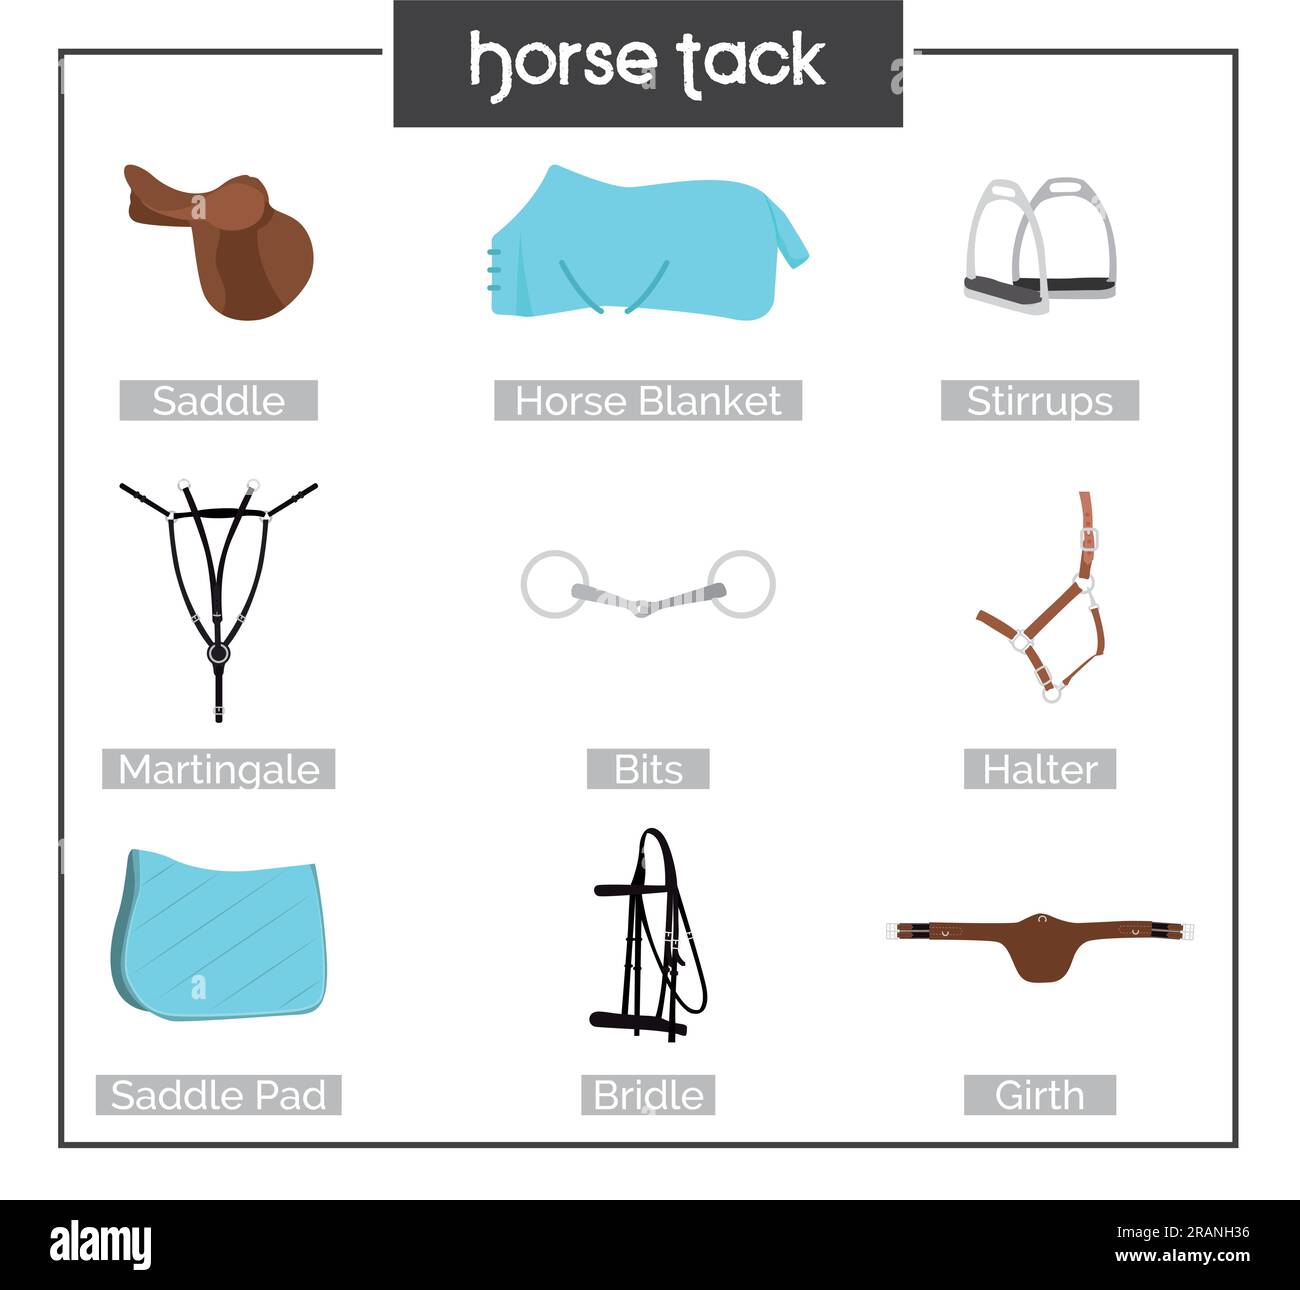 Illustrazione dell'imbracatura per cavalli. Attrezzature per cavalli. Illustrazione di una virata del cavallo. Munizioni per cavalli sella, staffe, coperta per cavalli, martingala, punte Illustrazione Vettoriale